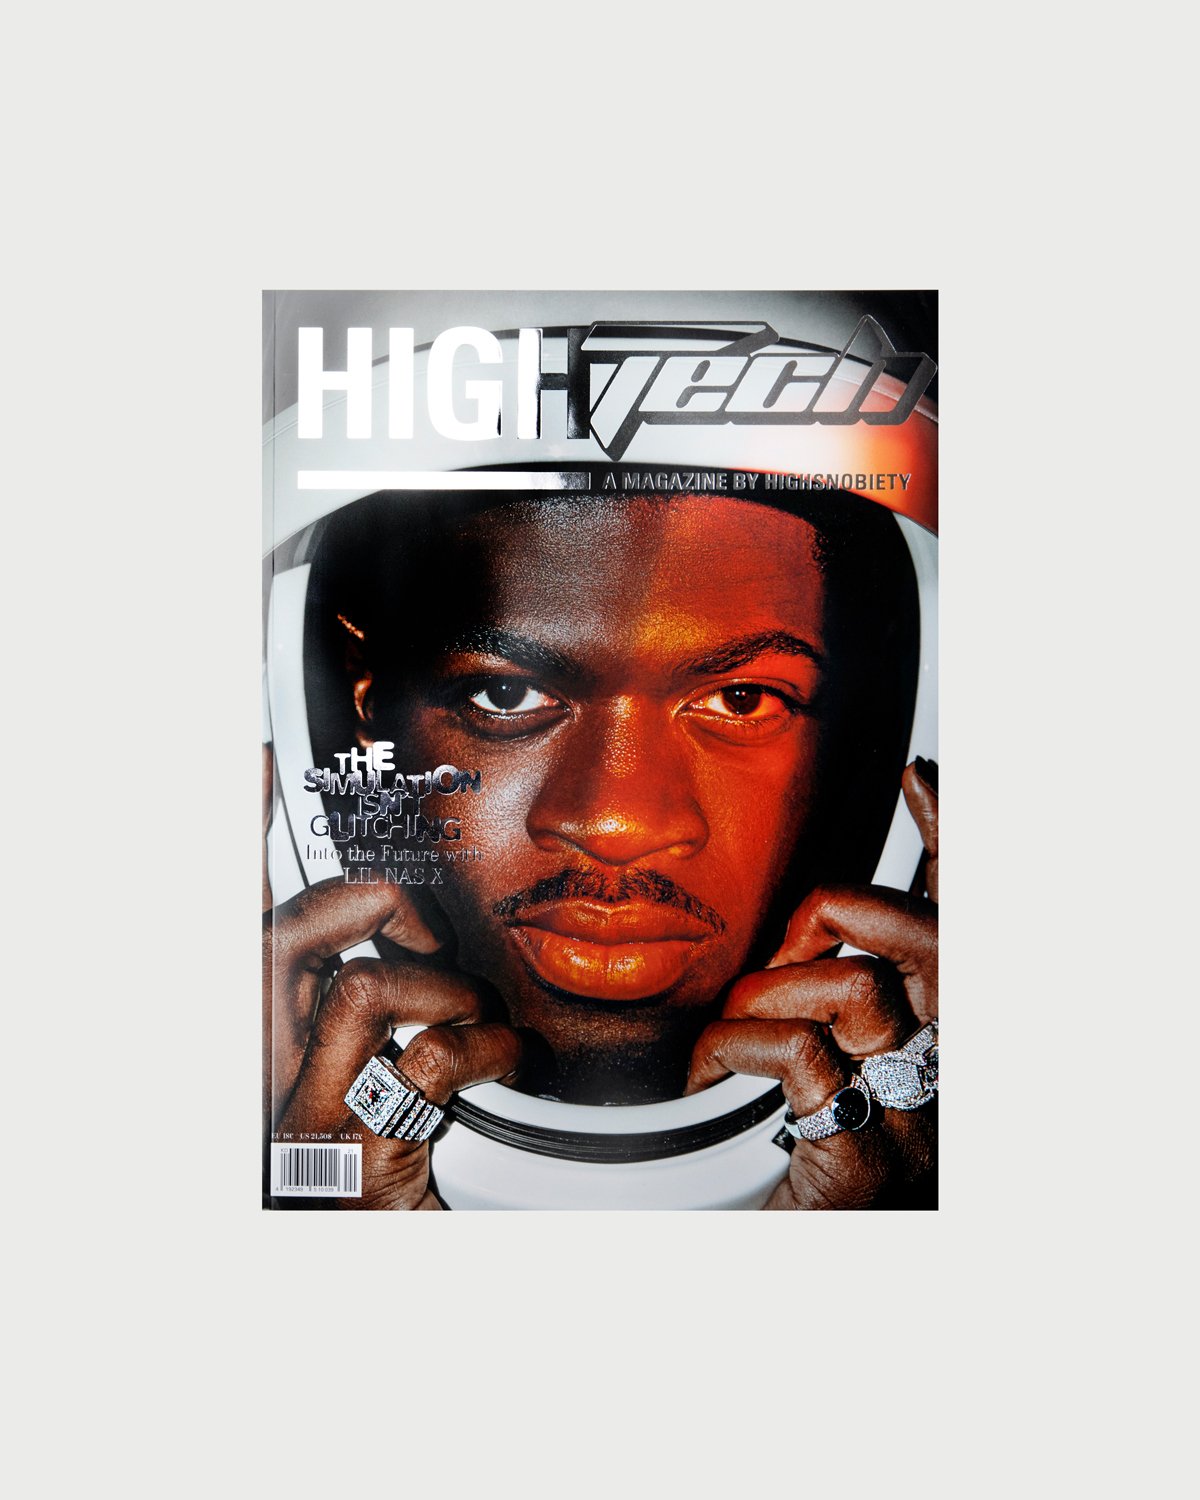 Highsnobiety - HIGHTech - A Magazine by Highsnobiety - Magazines - Multi - Image 1